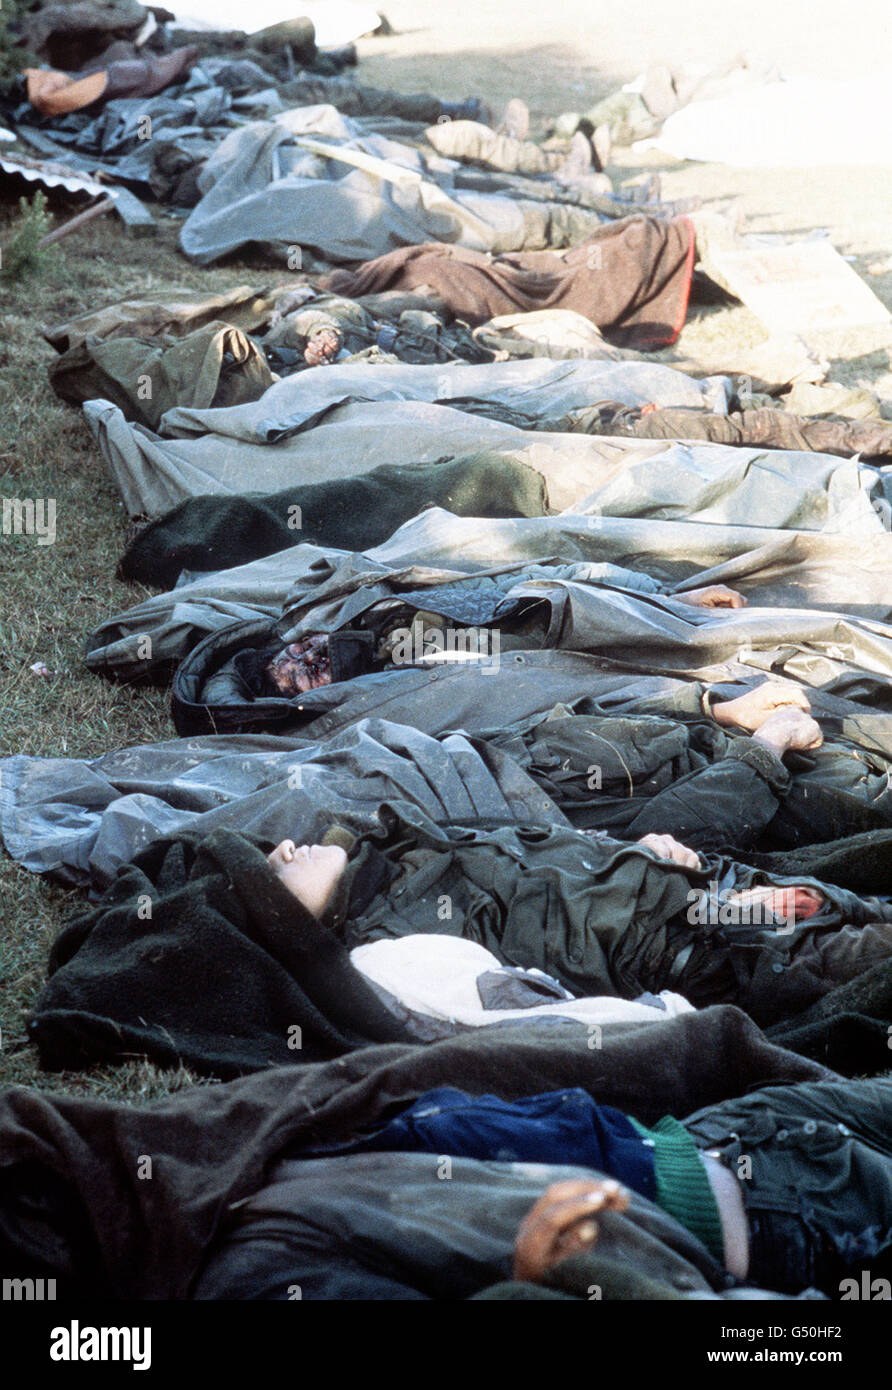 LA GUERRA DELLE FALKLANDS 1982: Truppe argentine che sono morte nella battaglia per Goose Green in attesa di trasporto a Port Darwin per la sepoltura. Goose Green e Port Darwin sono stati riconquistati da 2 Para (2° reggimento di paracadute di battaglione) il 28 maggio 1982. 25/03/02 truppe argentine che morirono nella battaglia per Goose Green sulle Isole Falkland, in attesa di trasporto a Port Darwin per la sepoltura. Il 20° anniversario dell'invasione delle Falklands da parte delle forze argentine sarà il 2 aprile 2002. Foto Stock